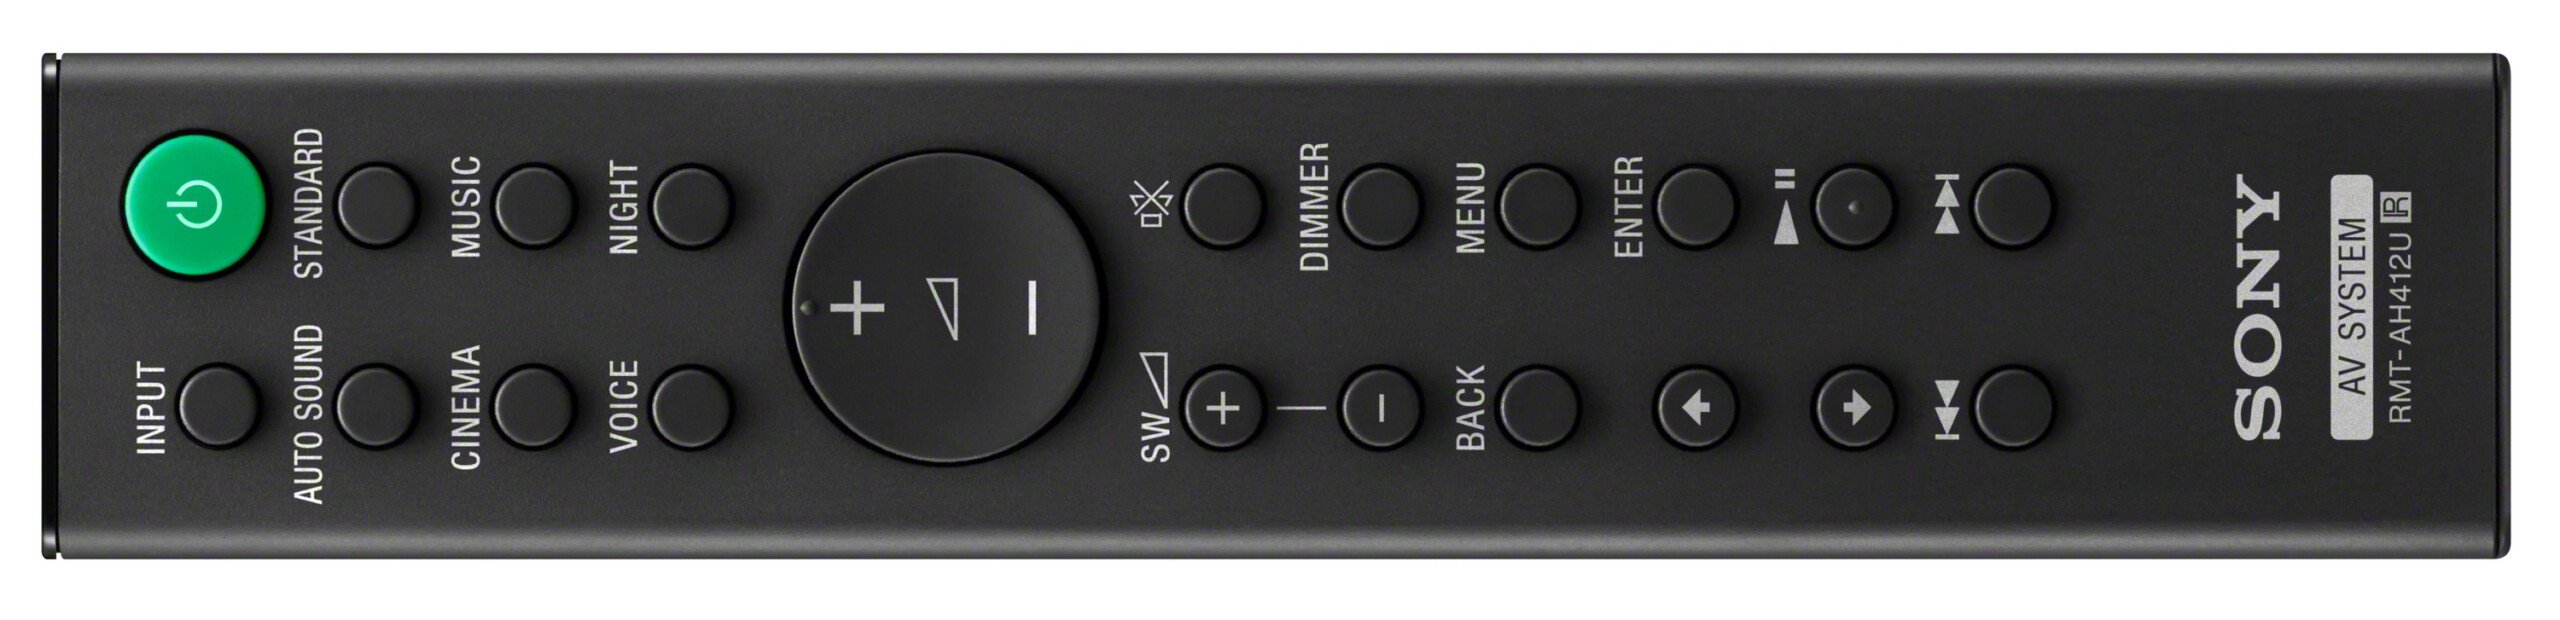 Test Sony HT-S40R : la barre de son Dolby Digital 5.1 pour en finir avec  les amplificateurs home cinema